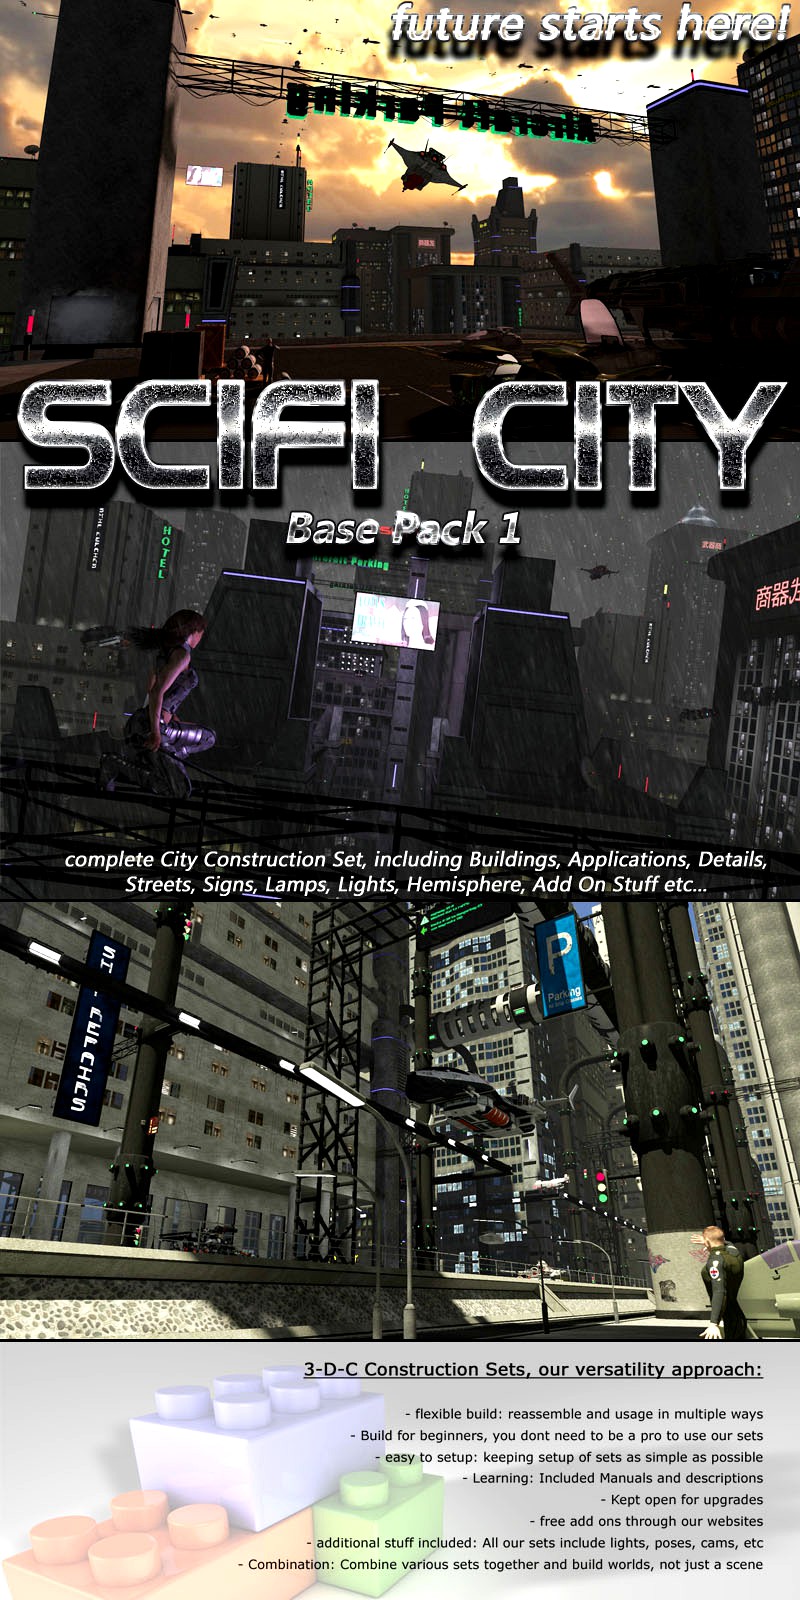 SciFi City Construction Set - Base Pack 1